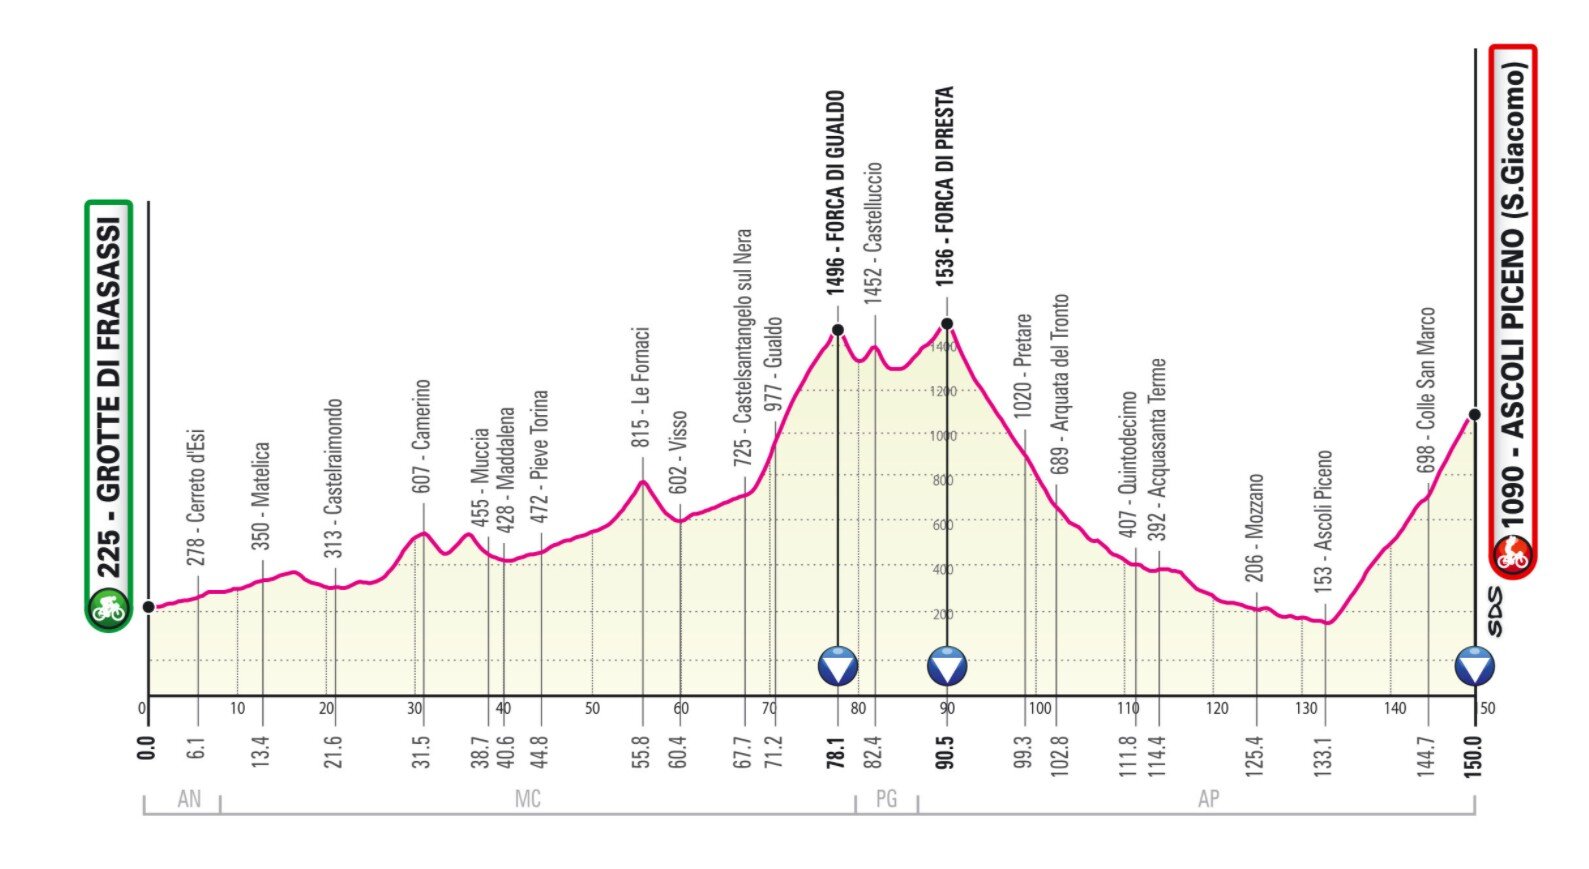 Stage 6 Giro Italia 2021